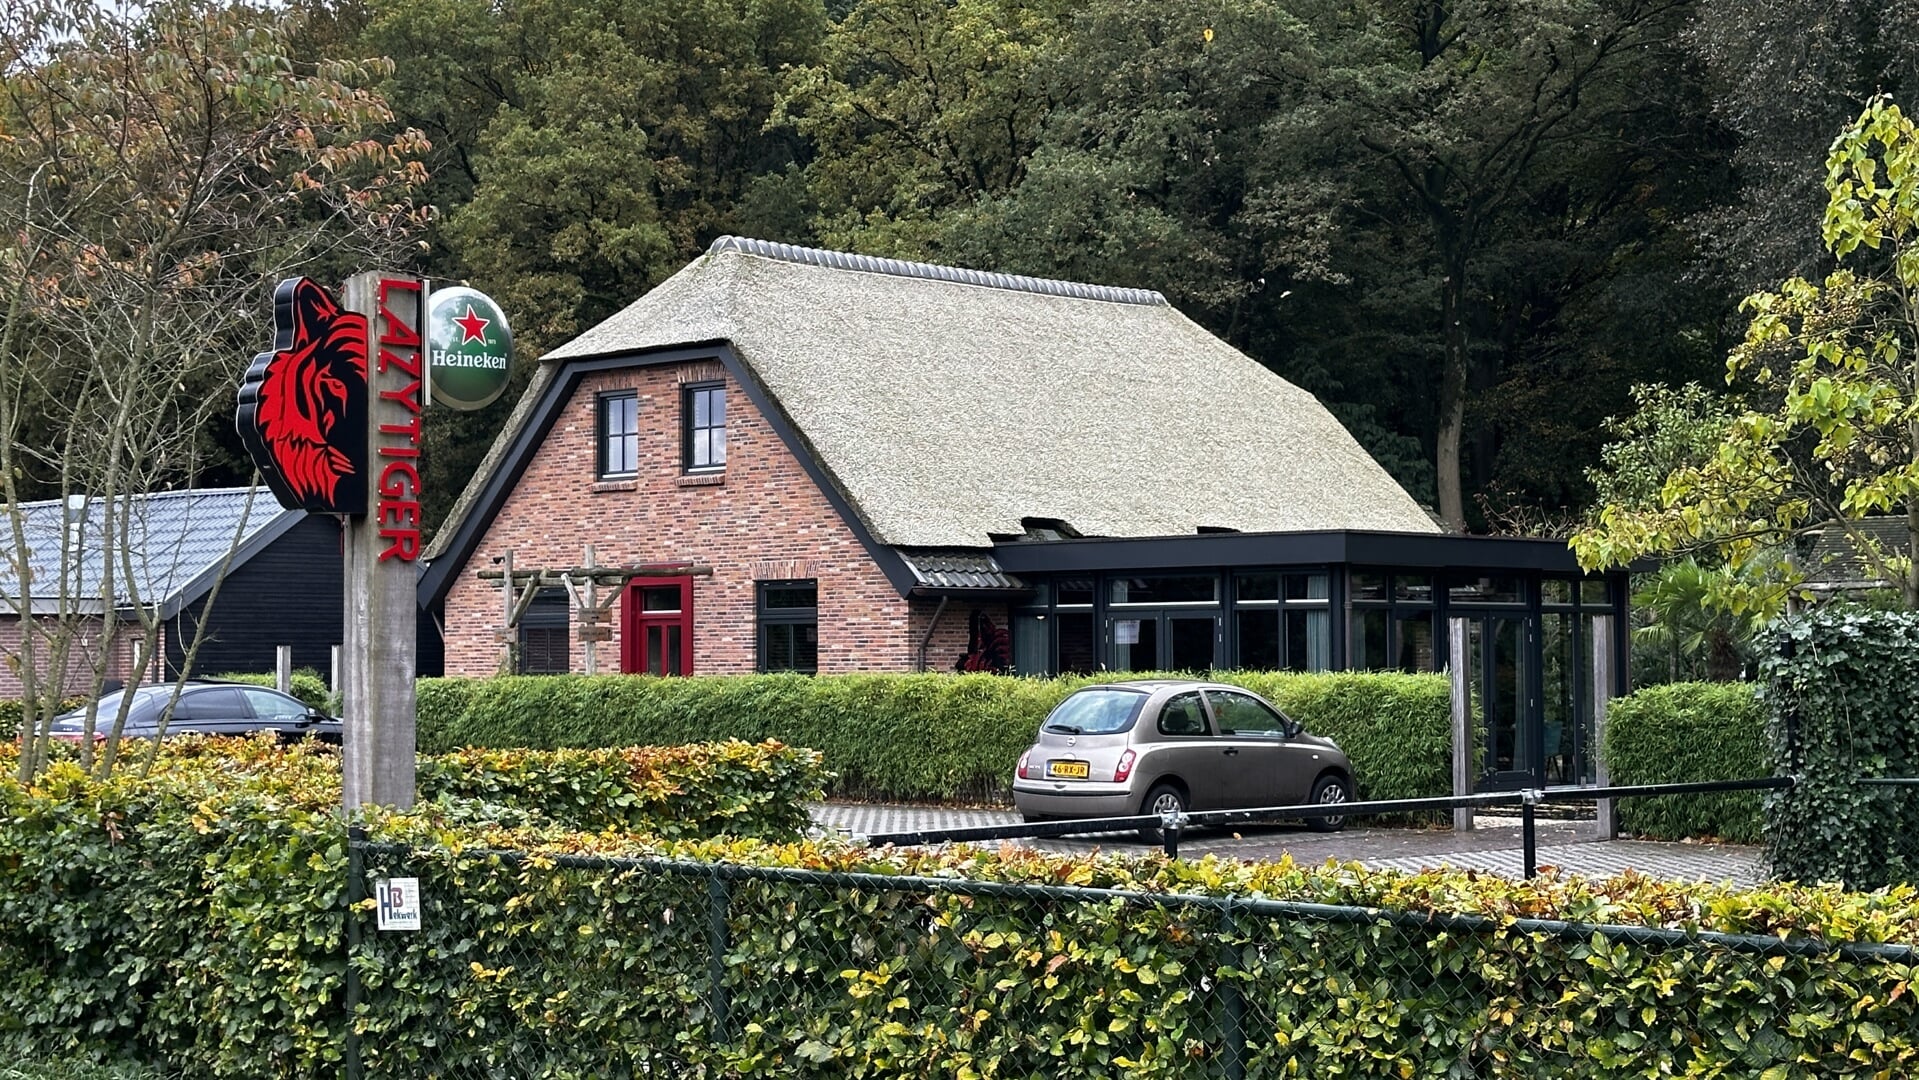 Restaurant Lazy Tiger aan de Julianalaan in Ermelo heeft opnieuw een dwangsom opgelegd gekregen illegaal bijgebouw.